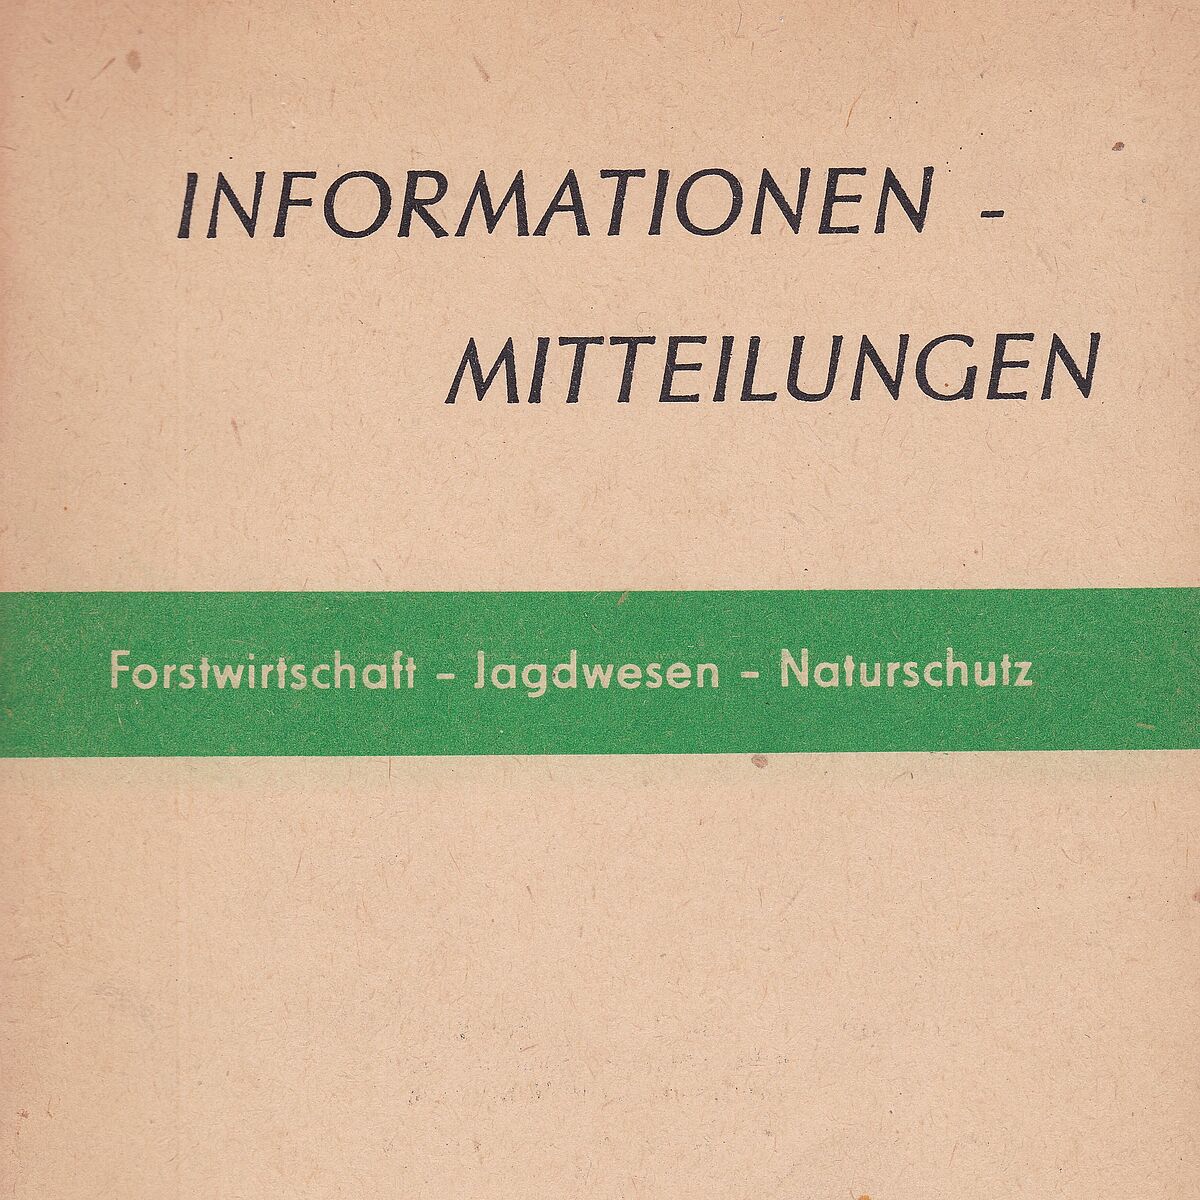 Inform. Mitteilungen RdB Potsdam